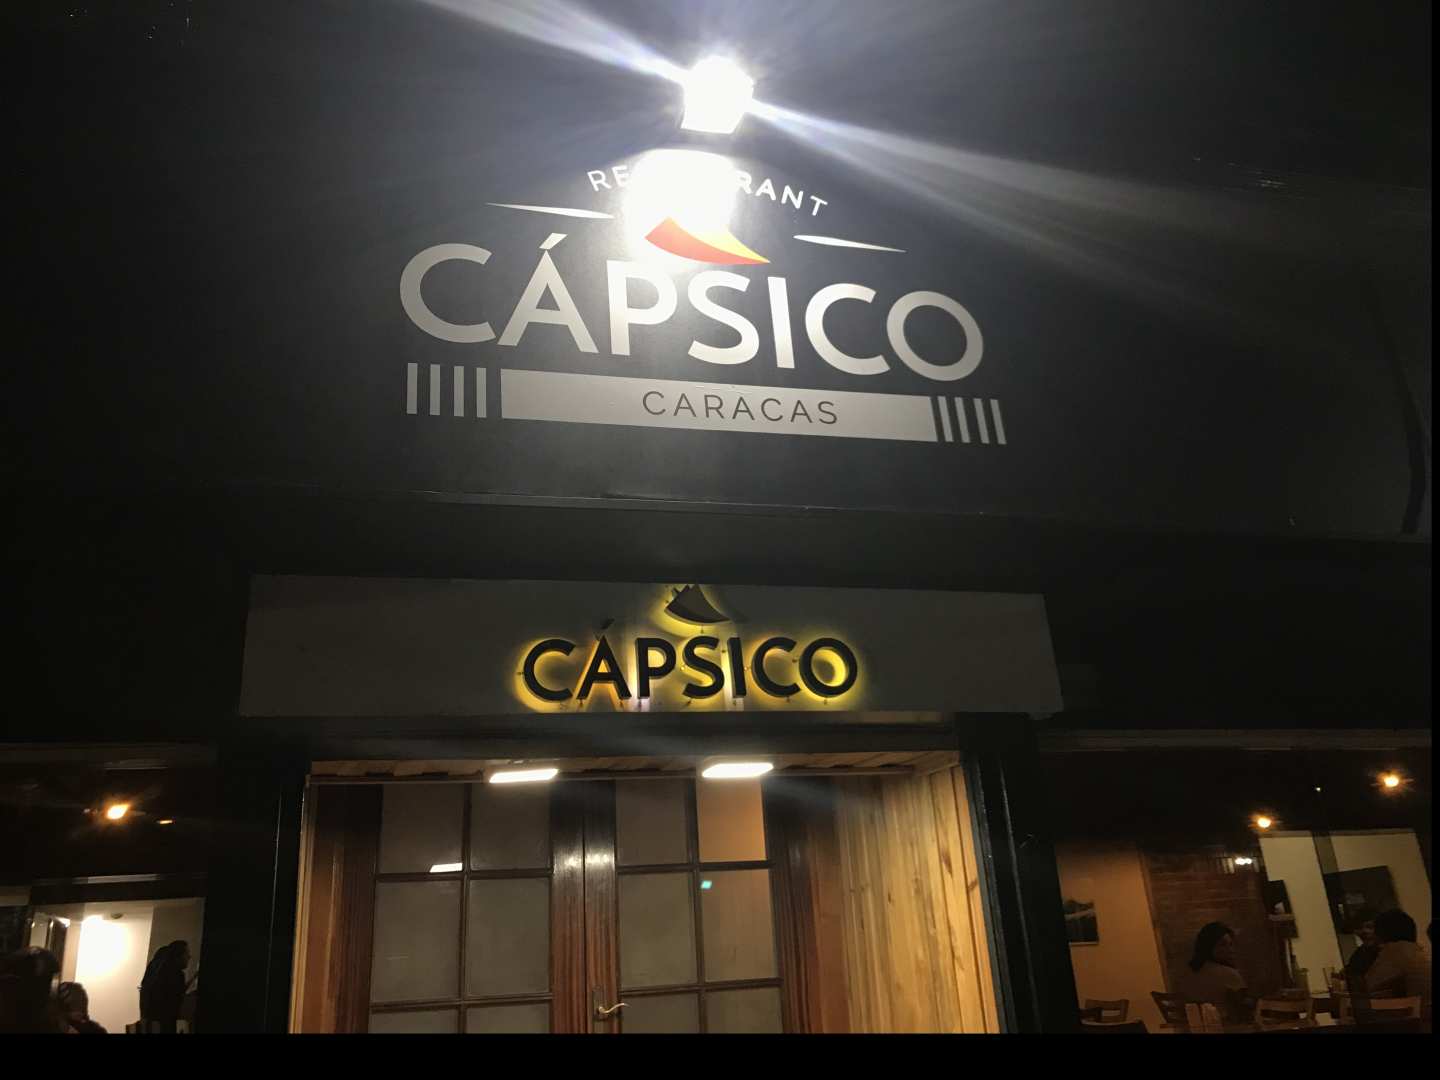 Capsico Caracas